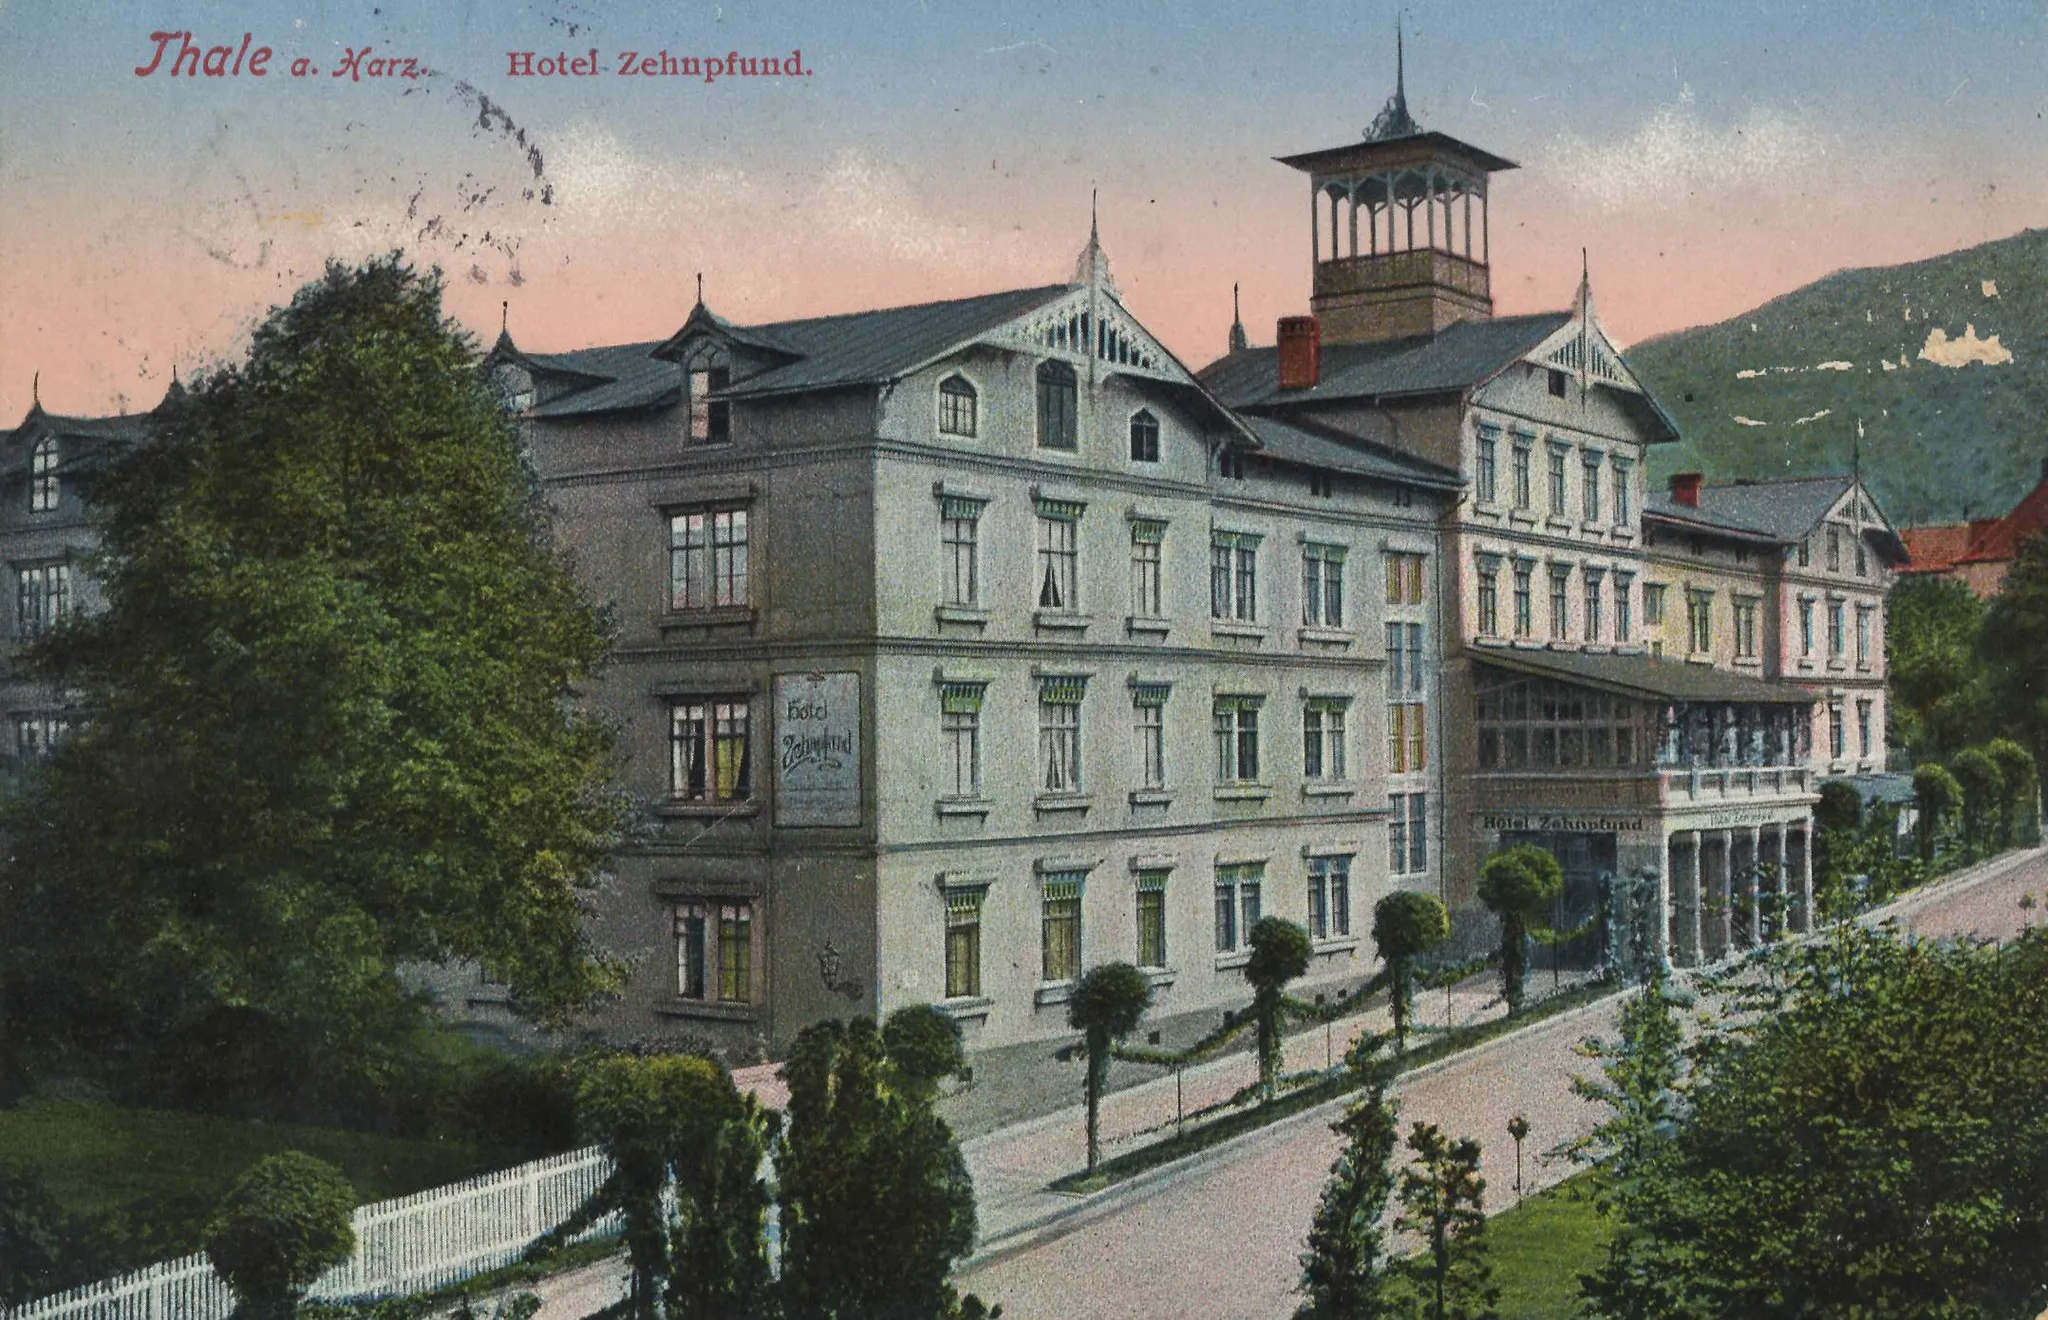 Photo showing: Hotel Zehnpfund in Thale